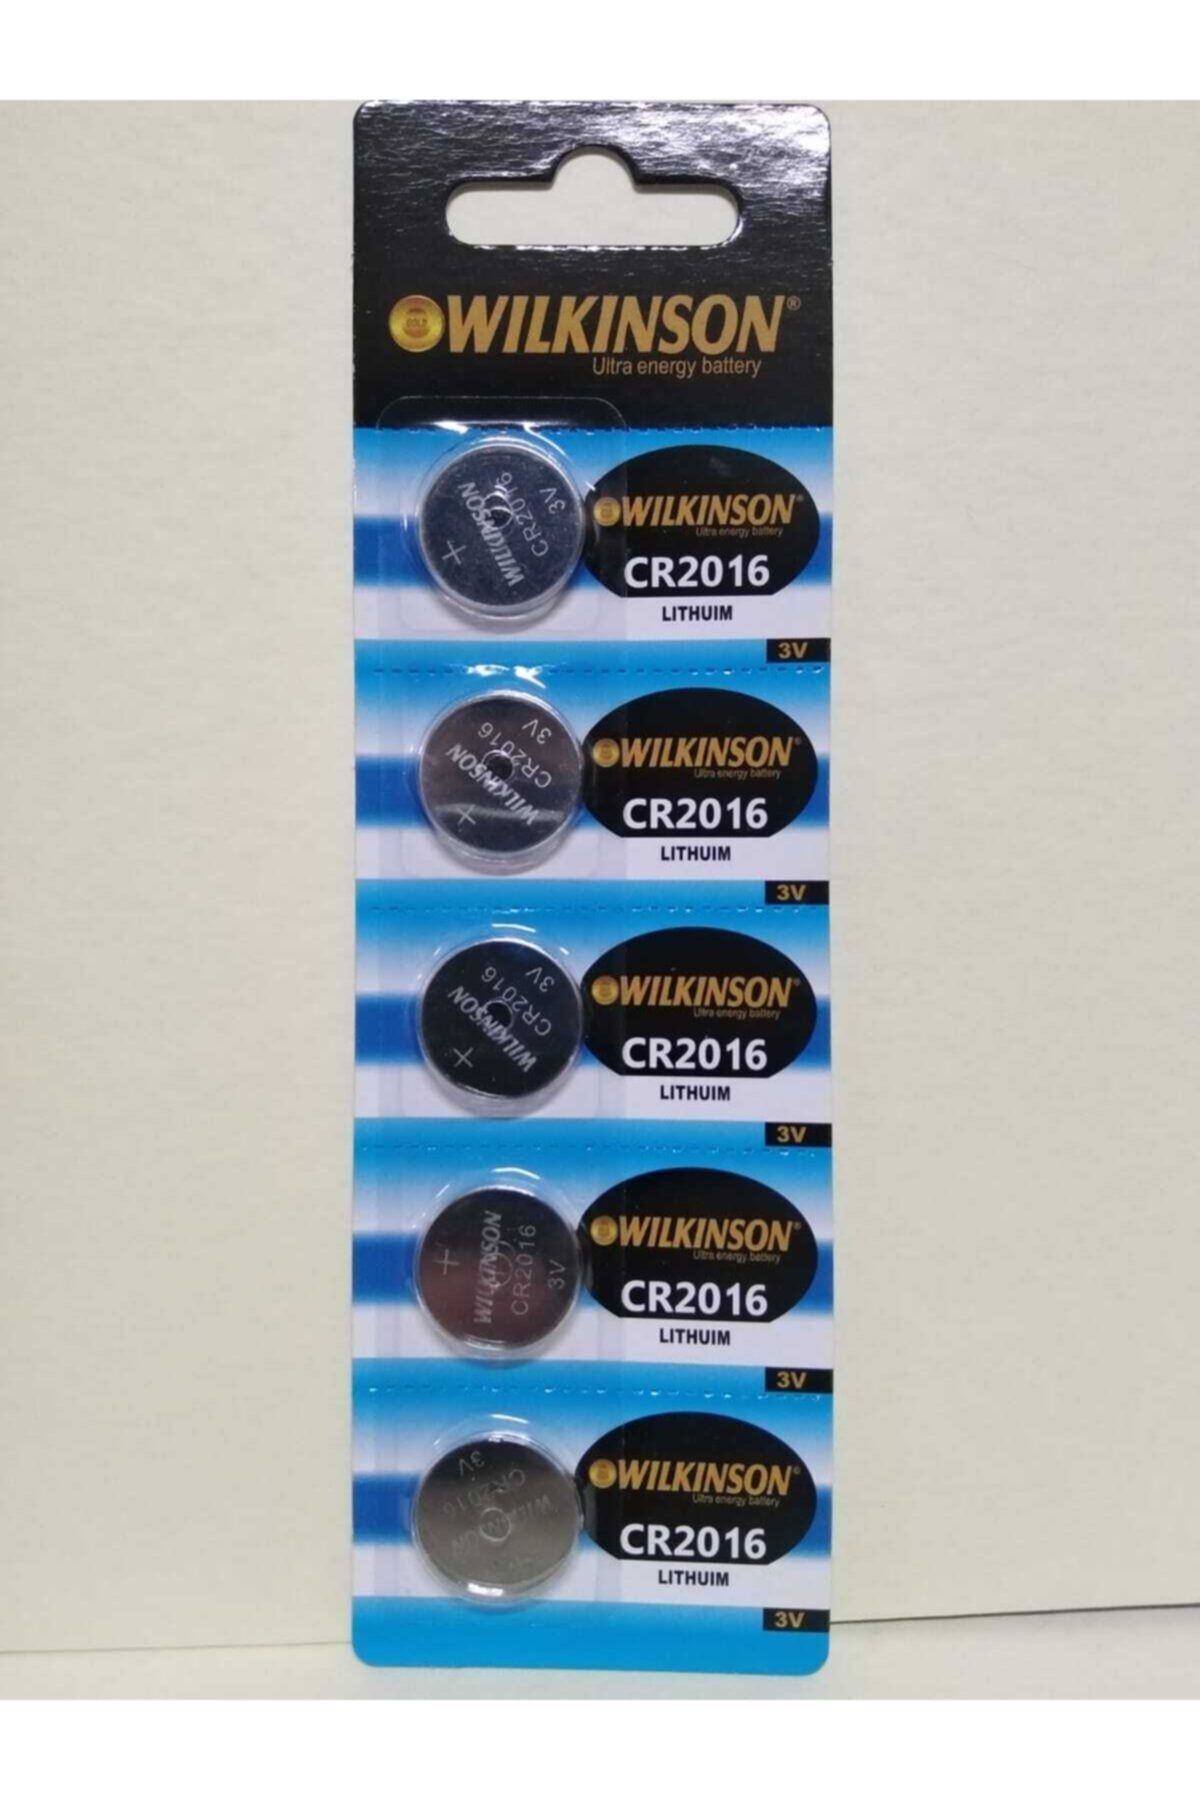 Wilkinson 3v Cr2016 Lıthuım Ultra Alkalin Pil 5 Adet